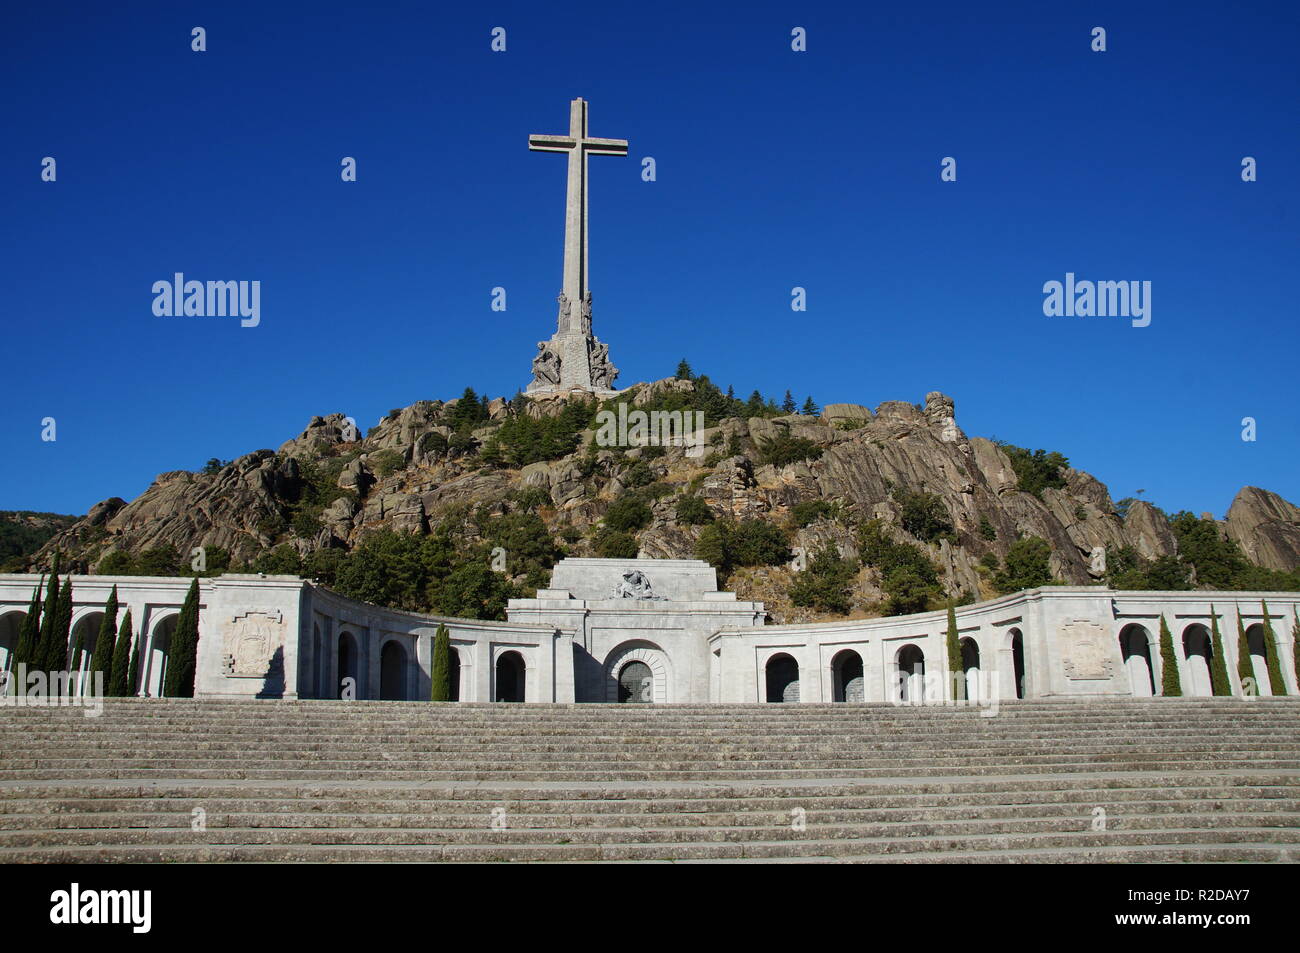 04 ottobre 2018, Spagna, El Escorial: A 155 metri e alta 44 metri di calcestruzzo larga croce si erge sul picco di montagna Risco de la Nava nella Valle de los Caídos (Valle dei Caduti) circa 60 chilometri a nord-ovest di Madrid. Nel monumento nella Sierra de Guadarrama è la tomba del dittatore spagnolo Franco. Tre giorni dopo la sua morte, egli è stato sepolto nella Basilica il 23 novembre 1975. Il mausoleo, che è stato azionato nella roccia da 20.000 lavoratori forzati tra il 1940 e il 1959, è considerato uno dei più grandi del mondo. È il più importante simbolo architettonico di Franco dittatori Foto Stock